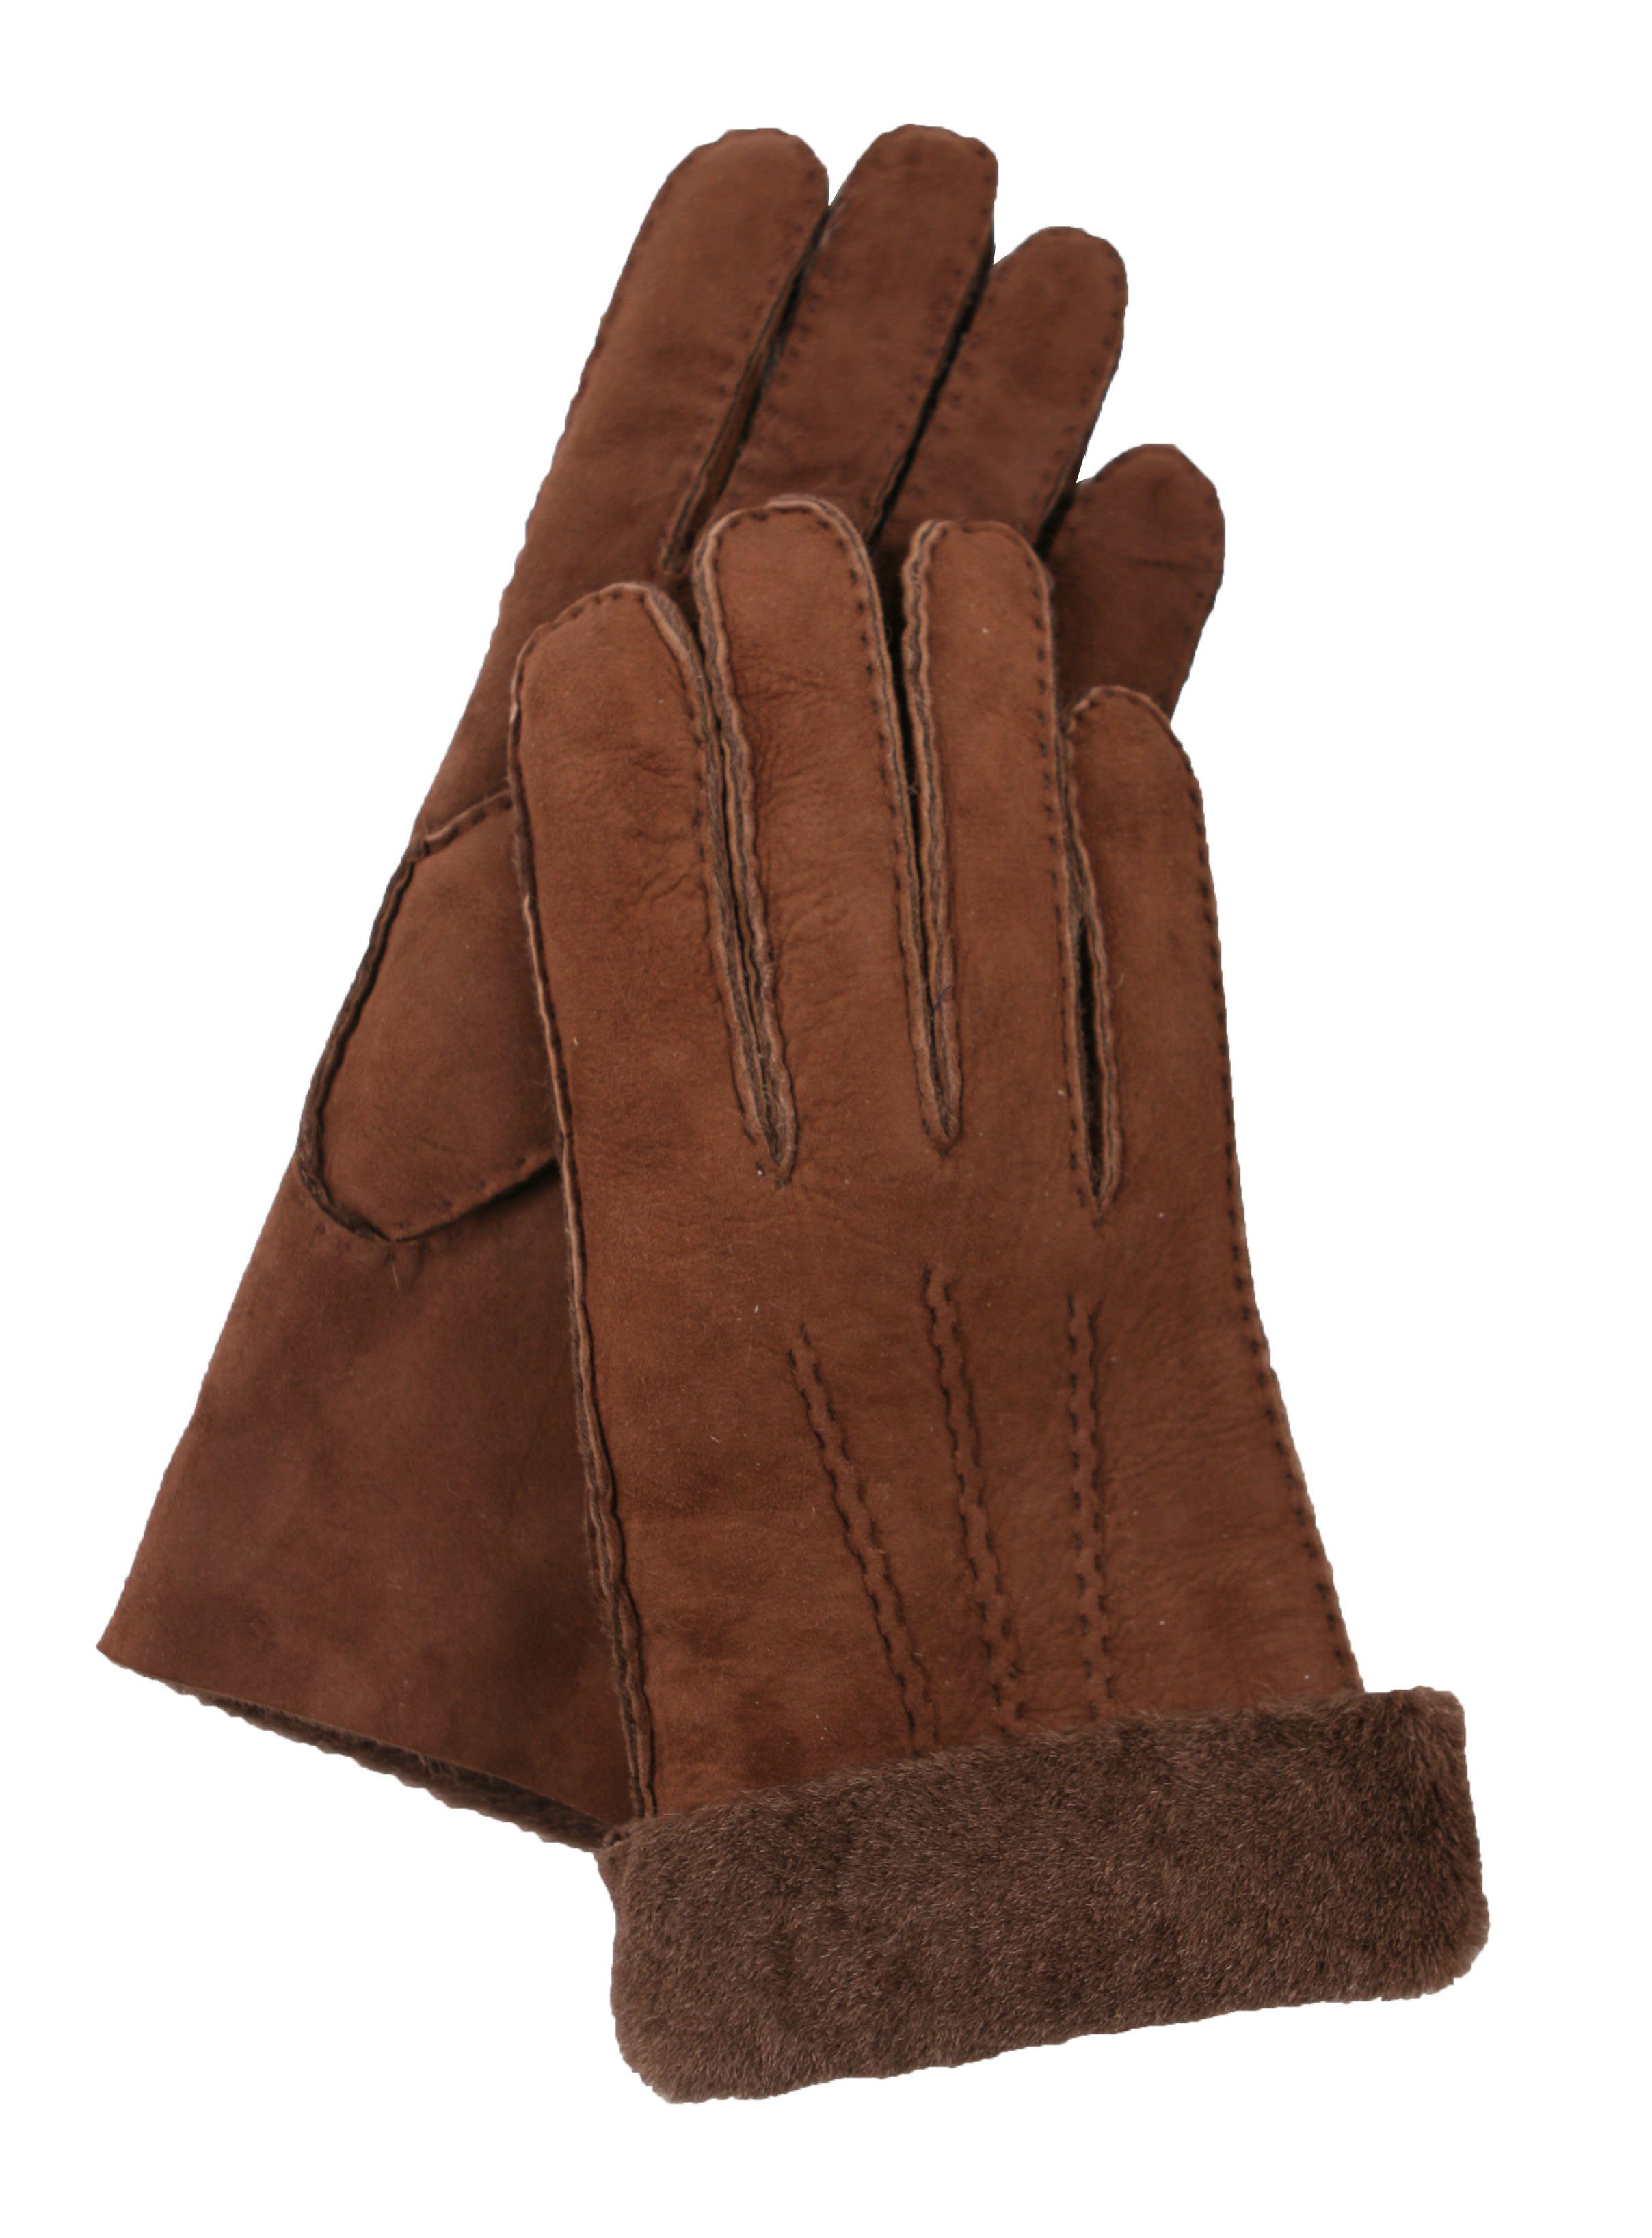 GRETCHEN Lederhandschuhe aus echtem Lammfell braun | Handschuhe